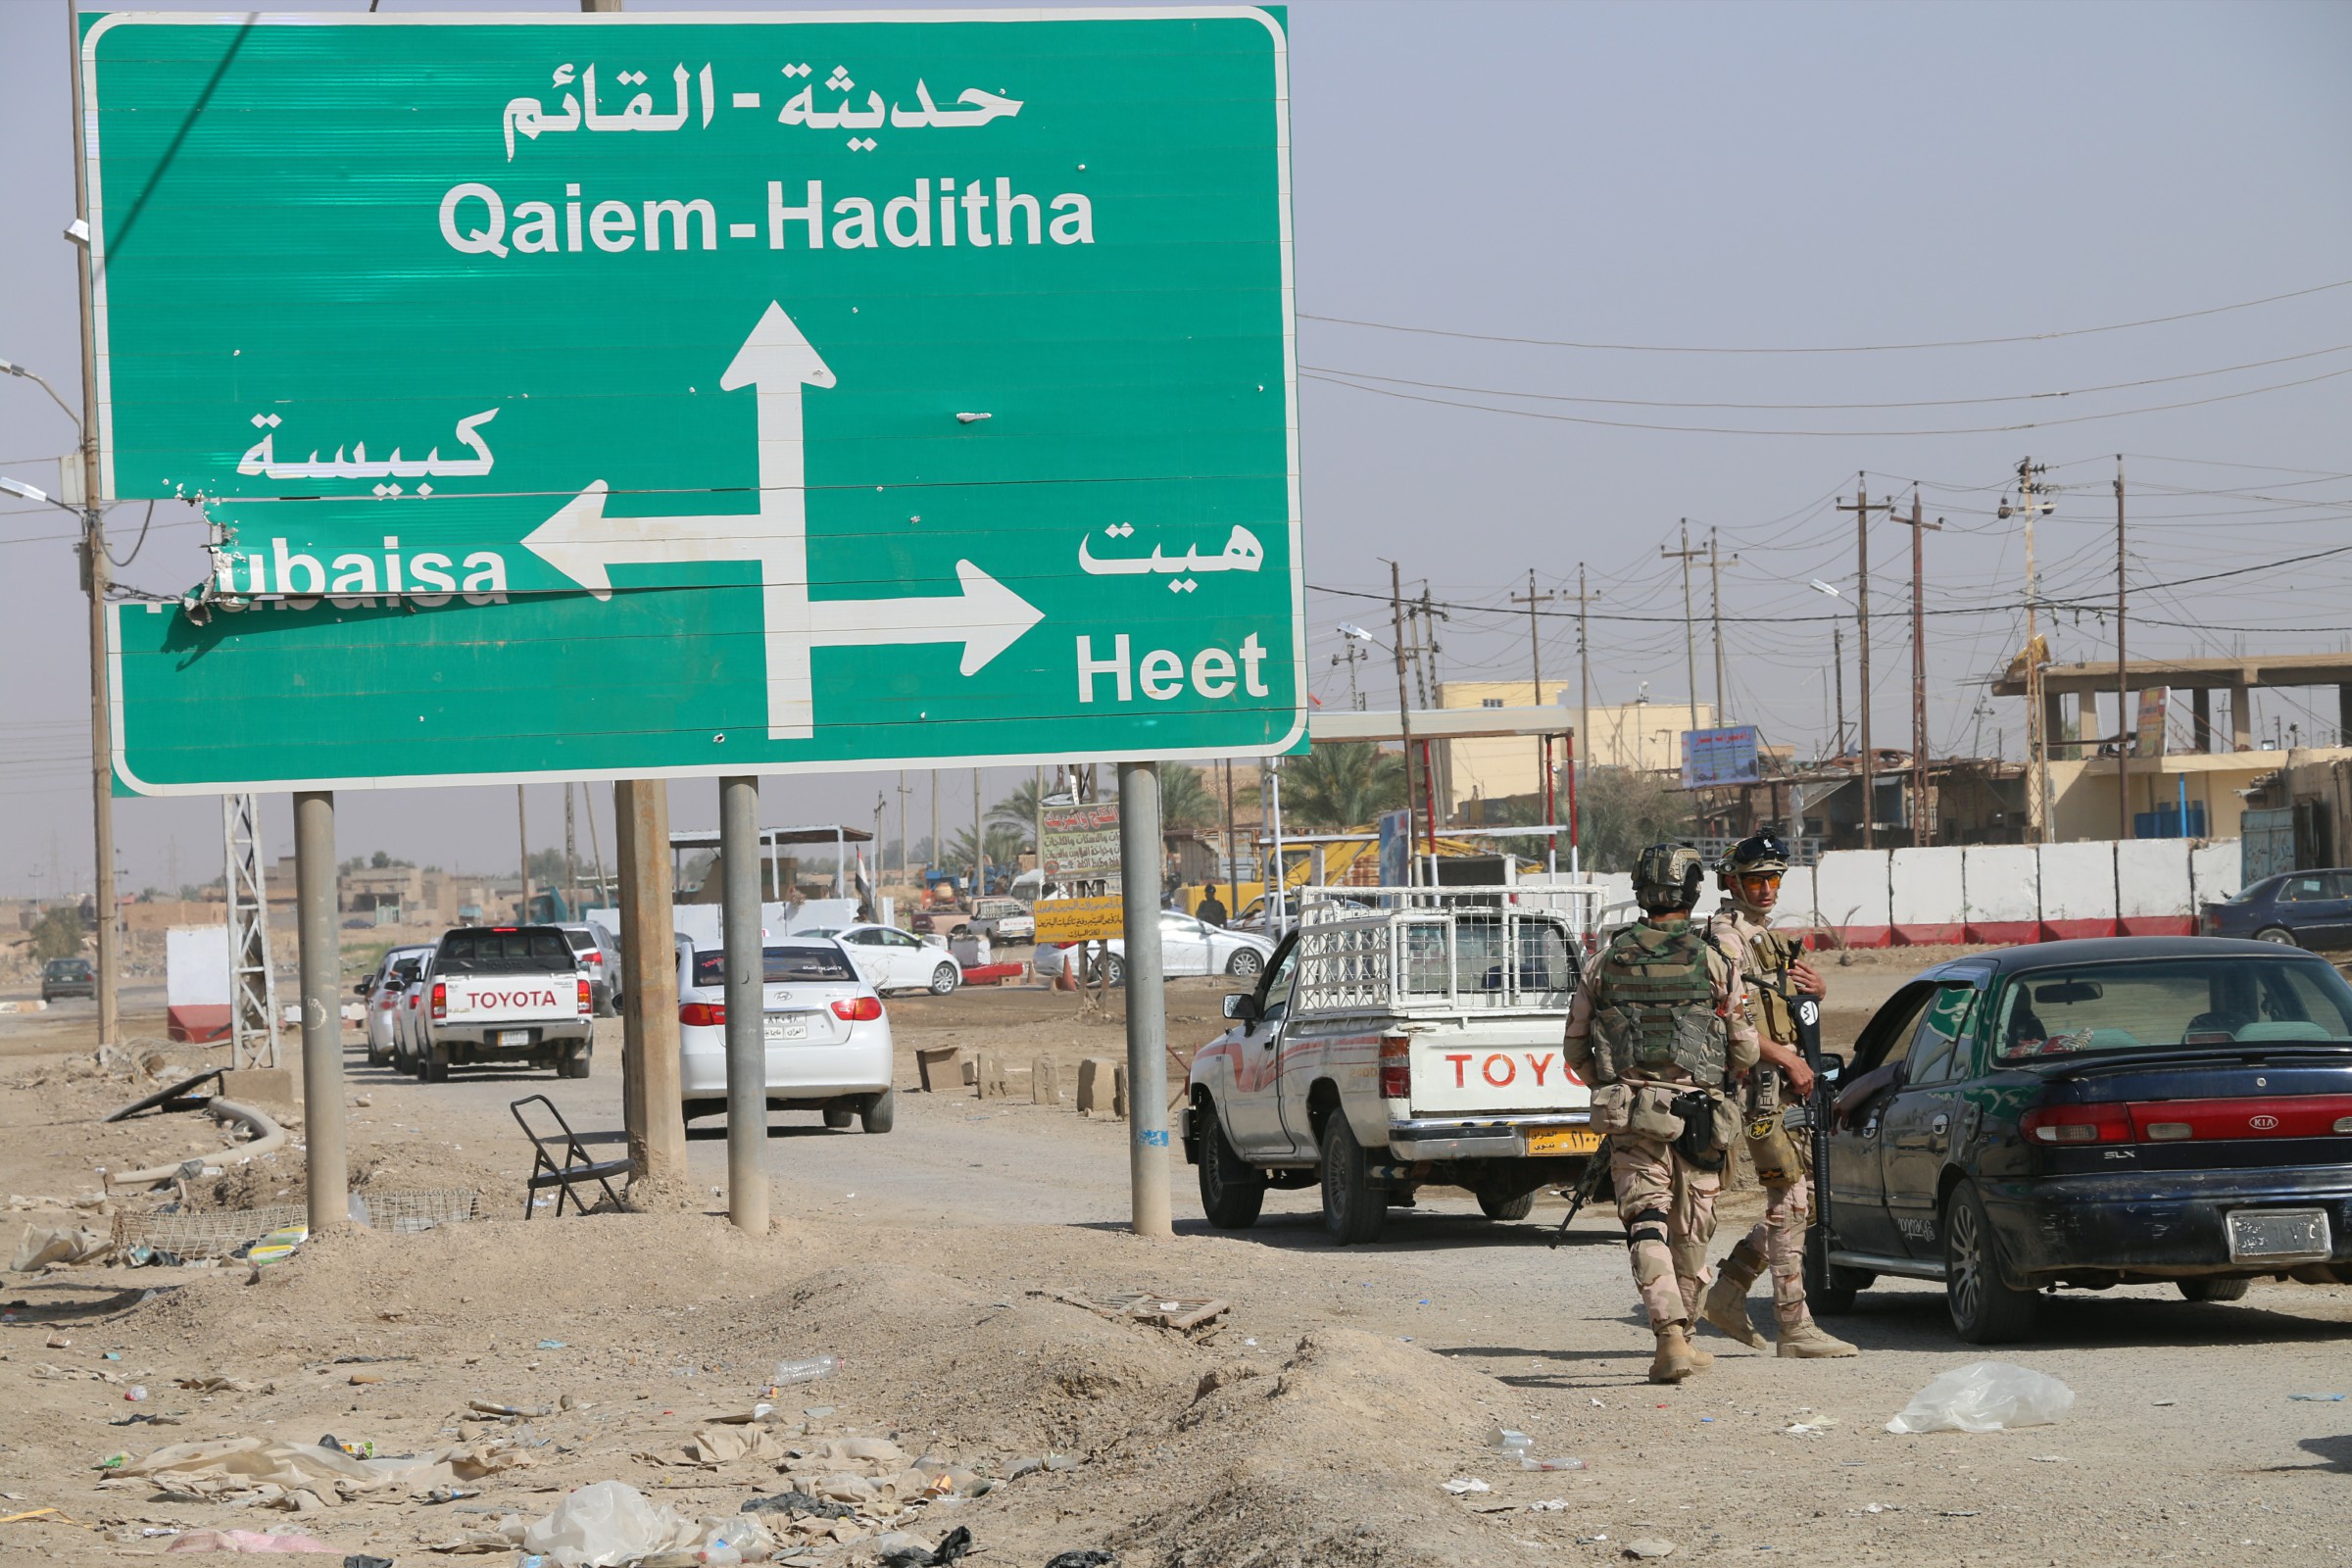 بالصورة .. قصاصات تهدد عوائل “داعش” وتطردها من هيت